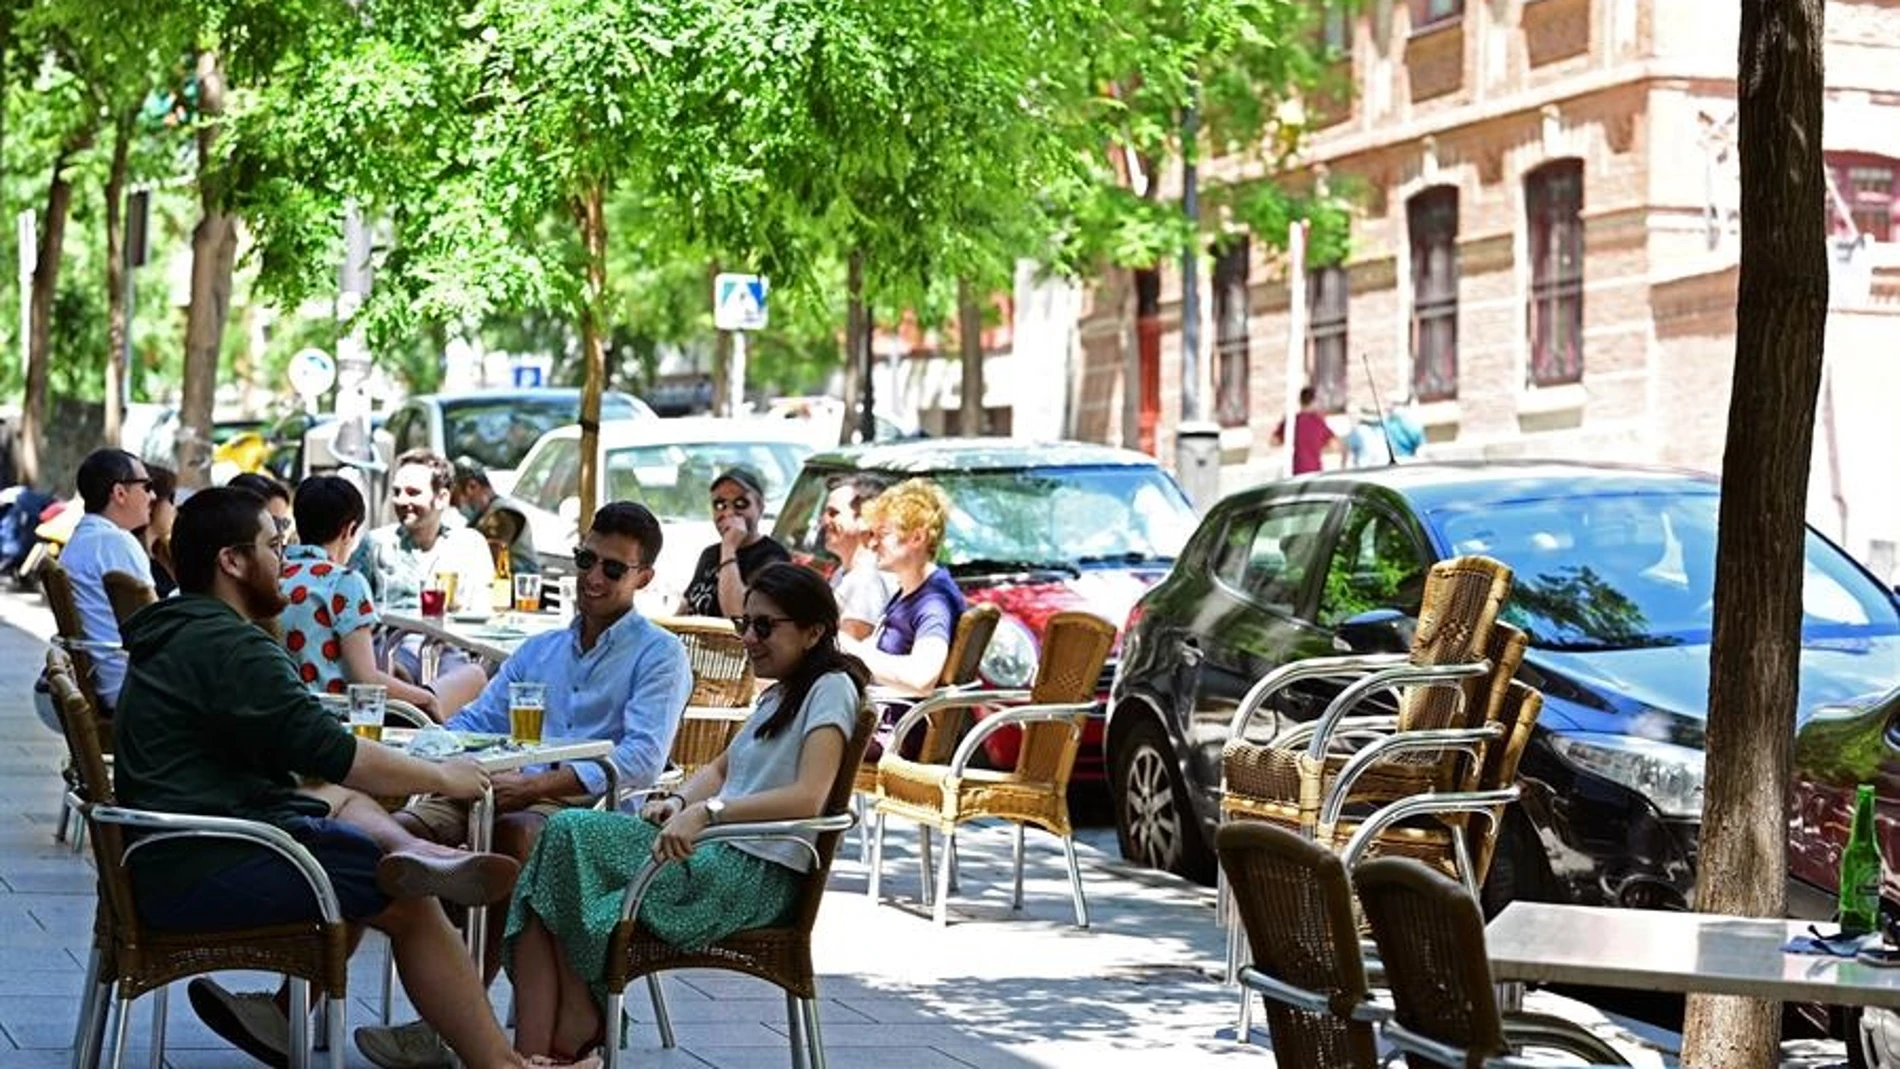 Personas en una terraza en el madrileño barrio de Lavapiés